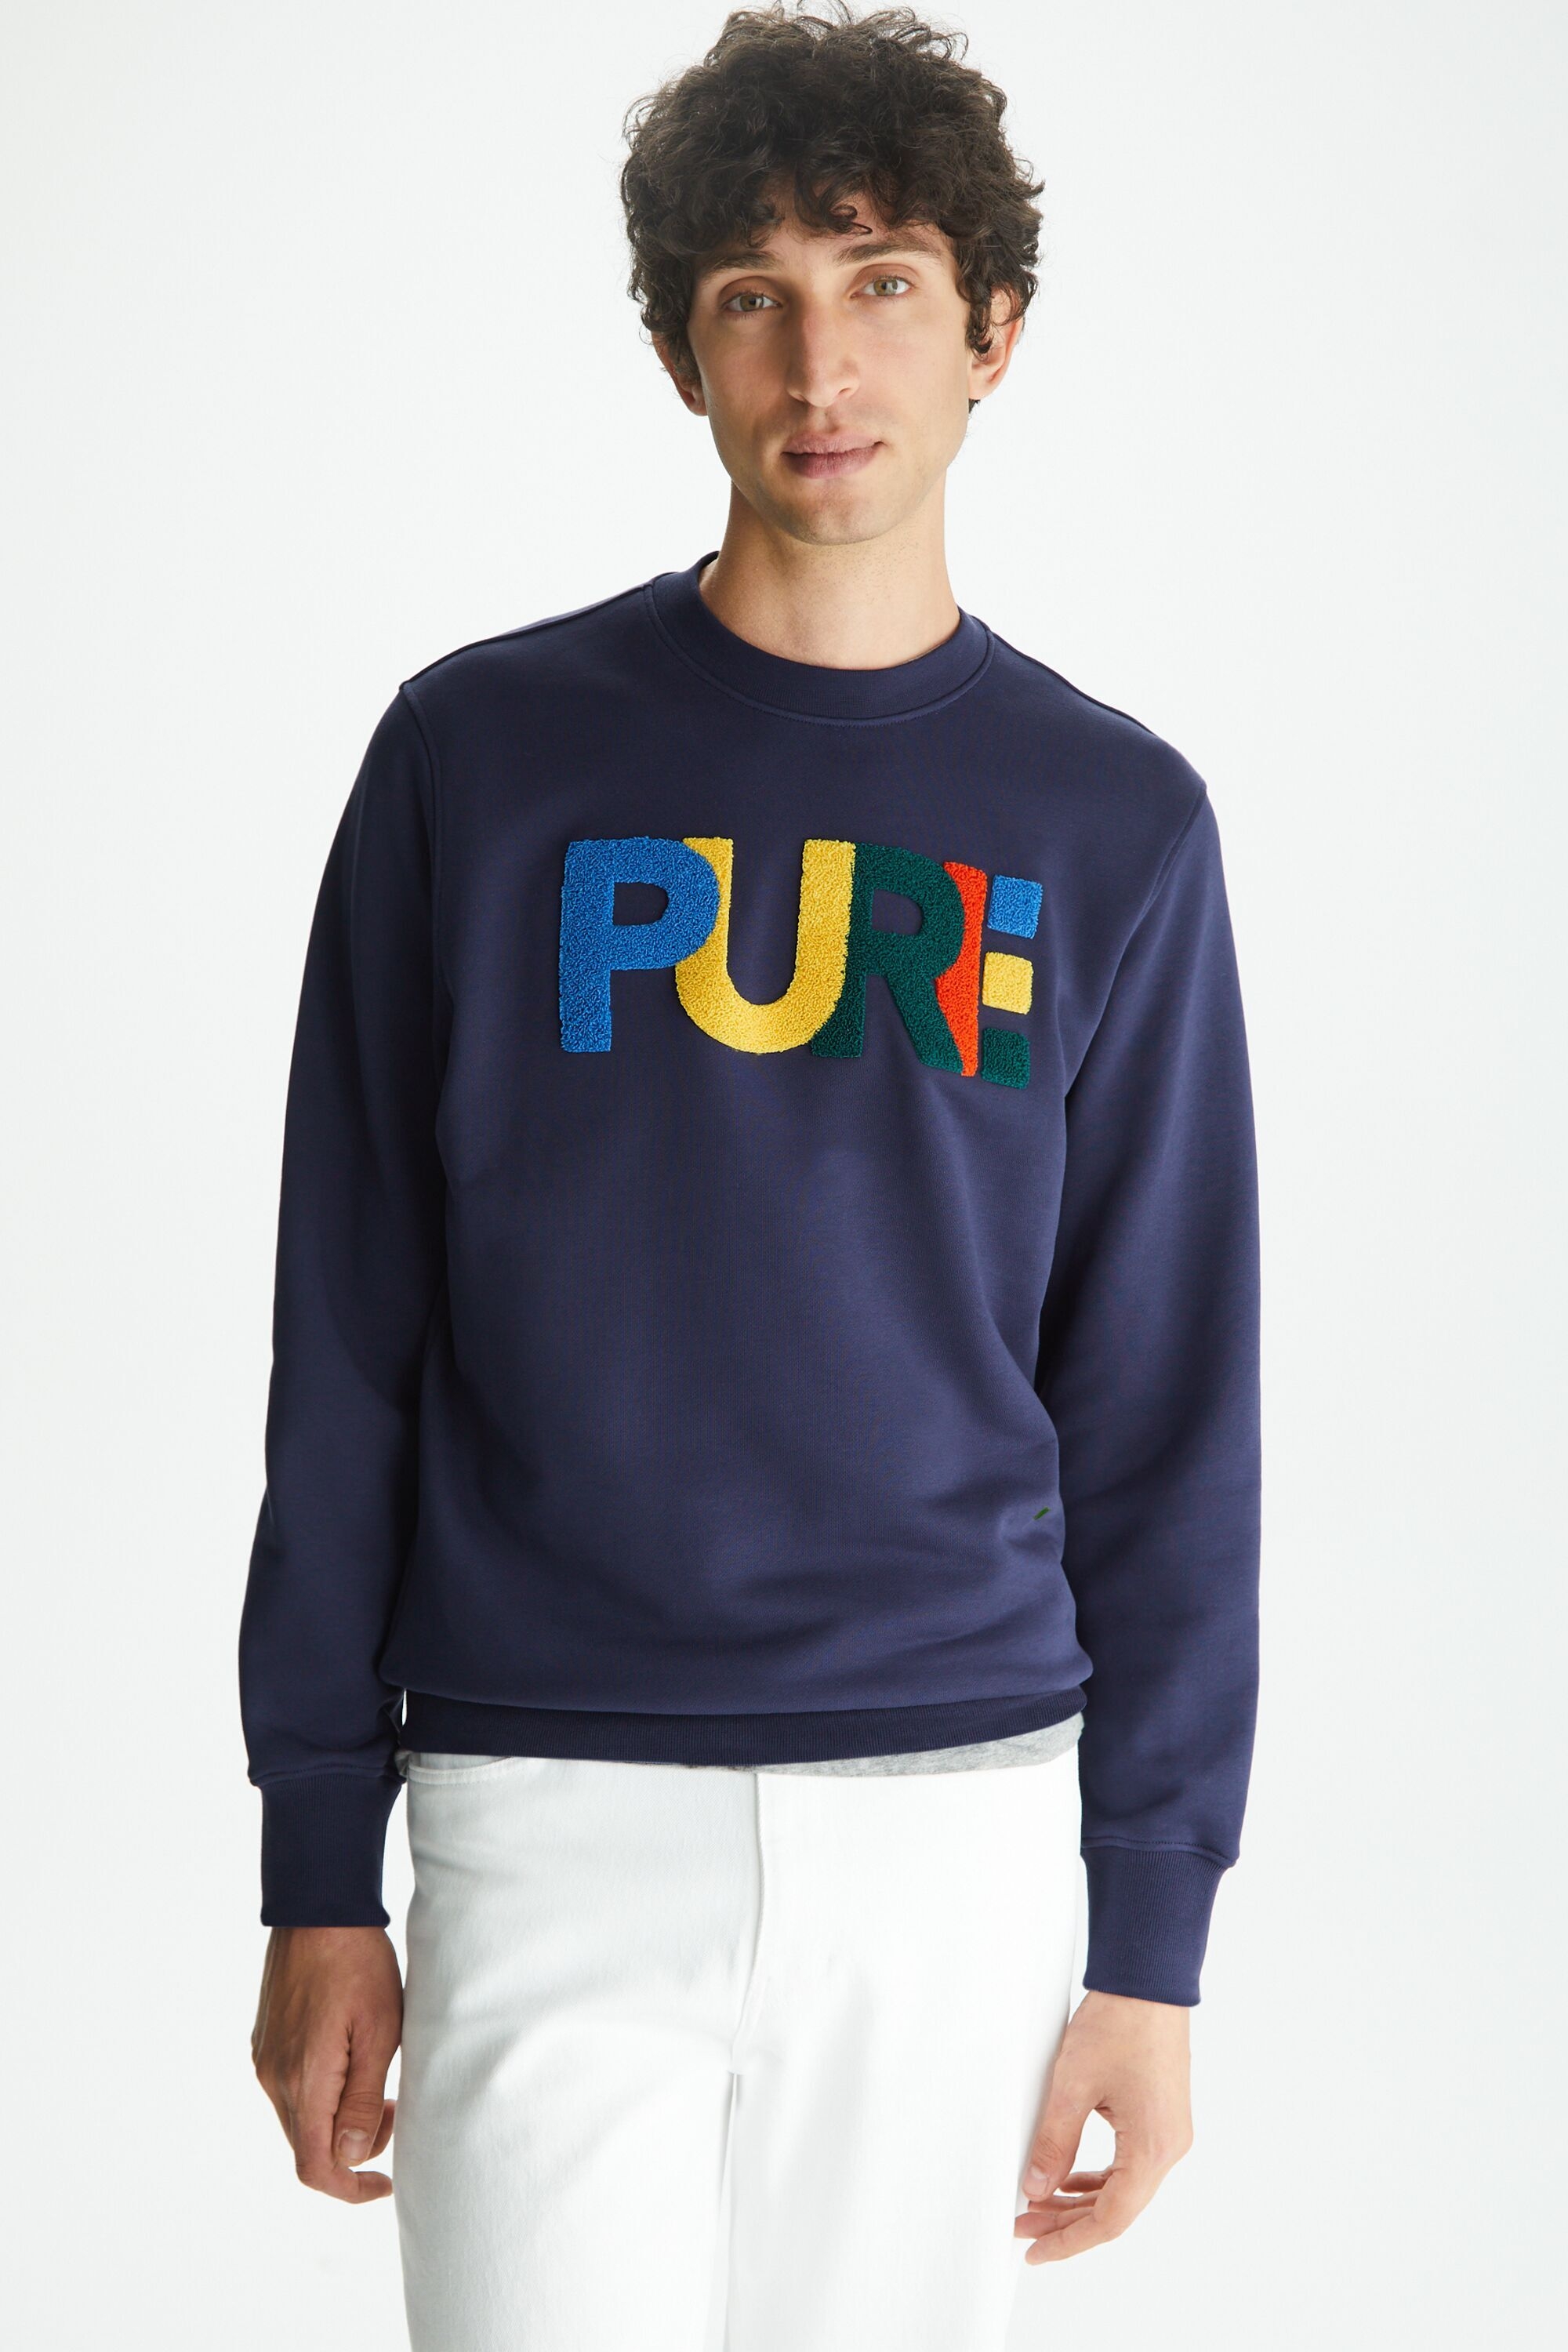 PURE fleece sweatshirt